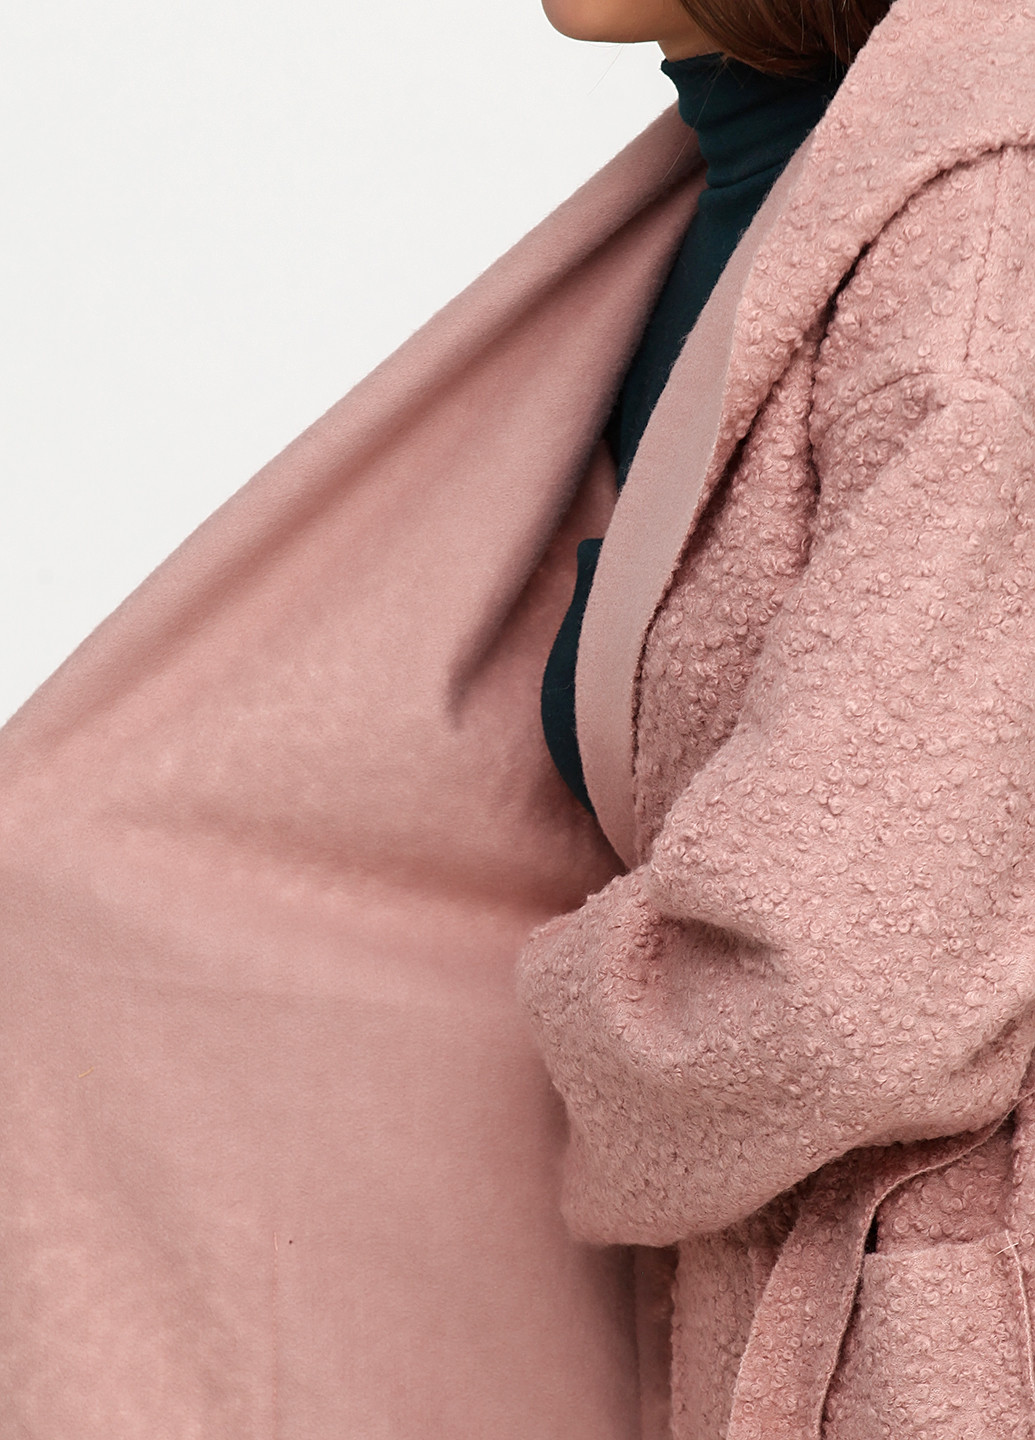 Розовое демисезонное Пальто New Collection